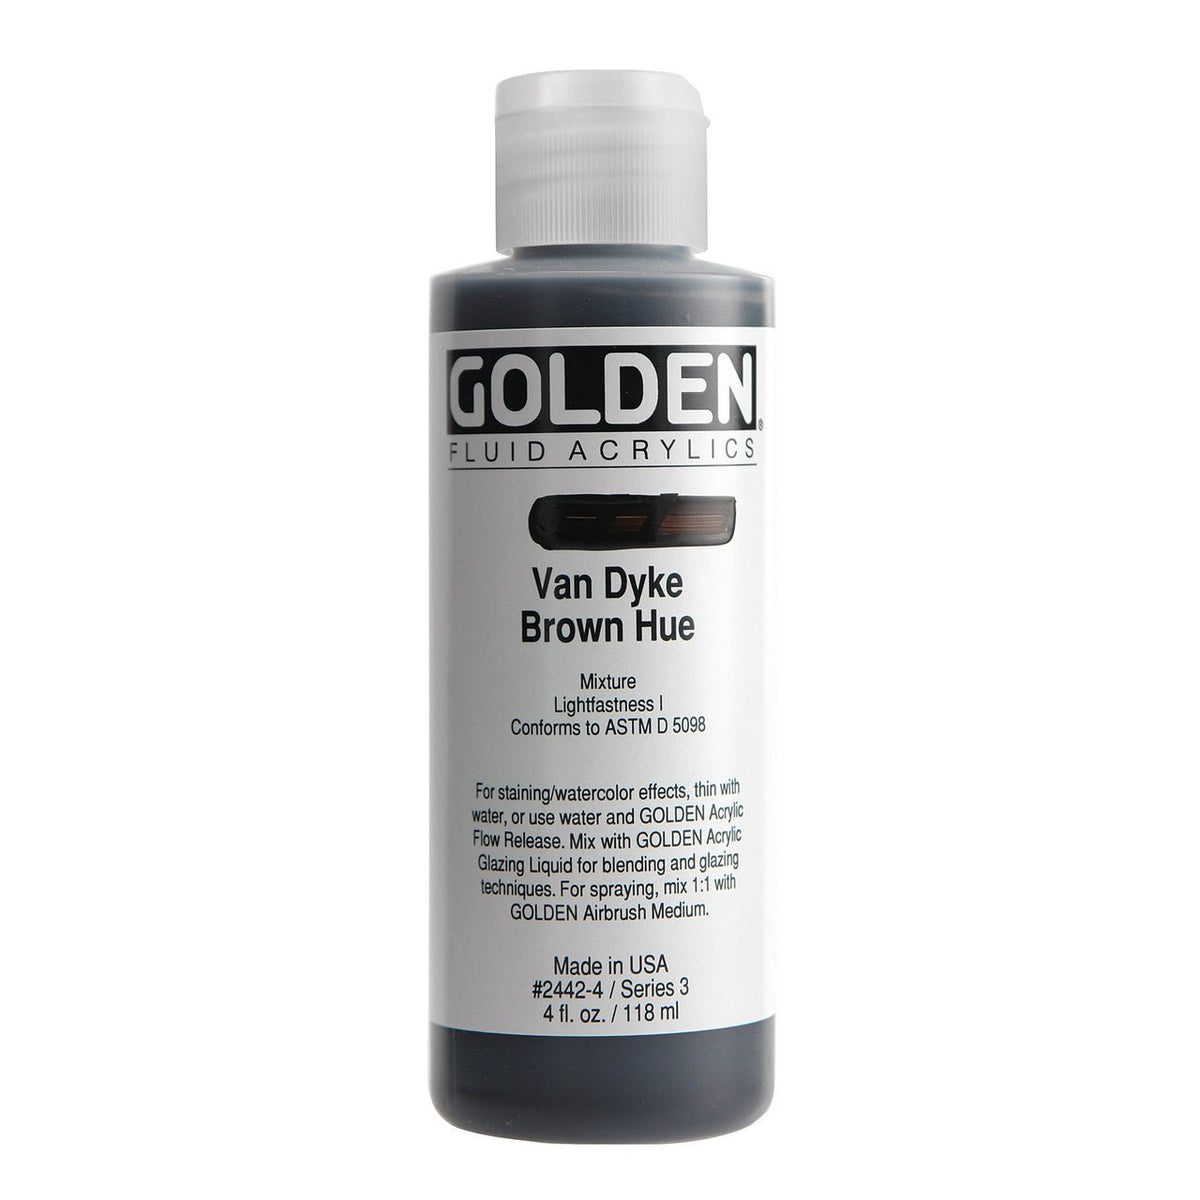 Golden Fluid Acrylic Van Dyke Brown Hue 4 oz - merriartist.com